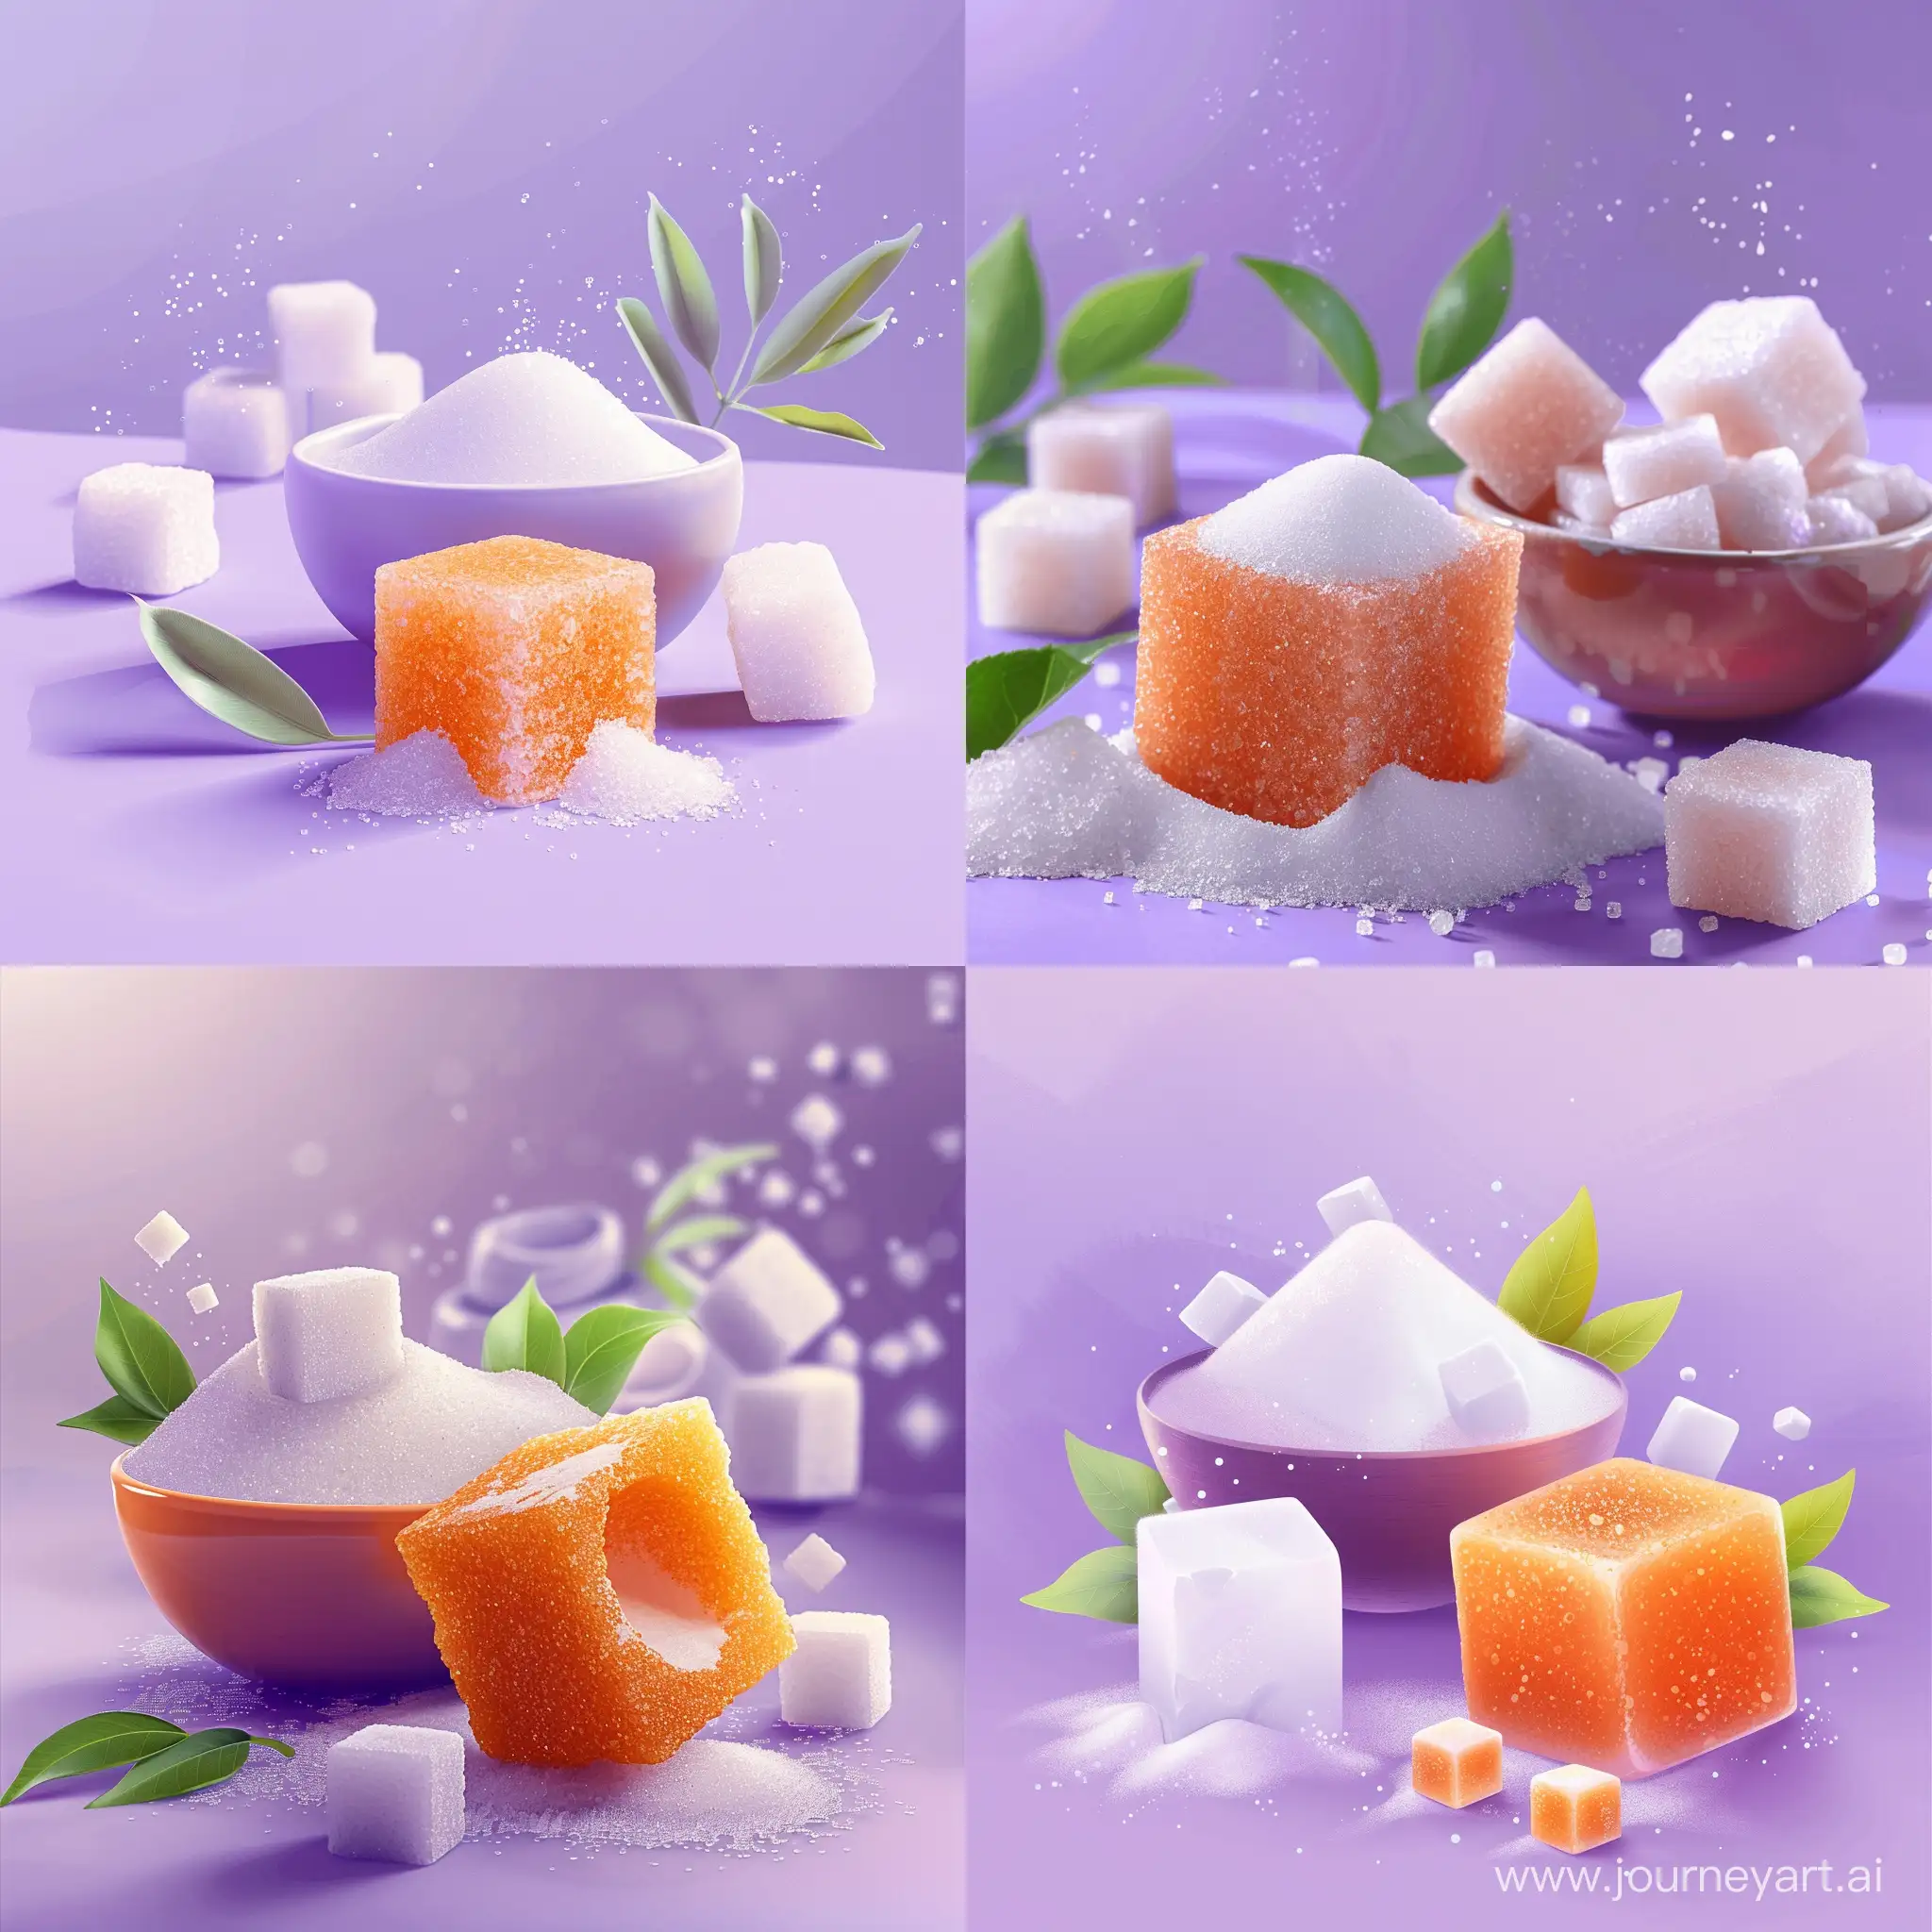 Joyful-Orange-Sugar-Cube-and-Bowl-on-Purple-Background